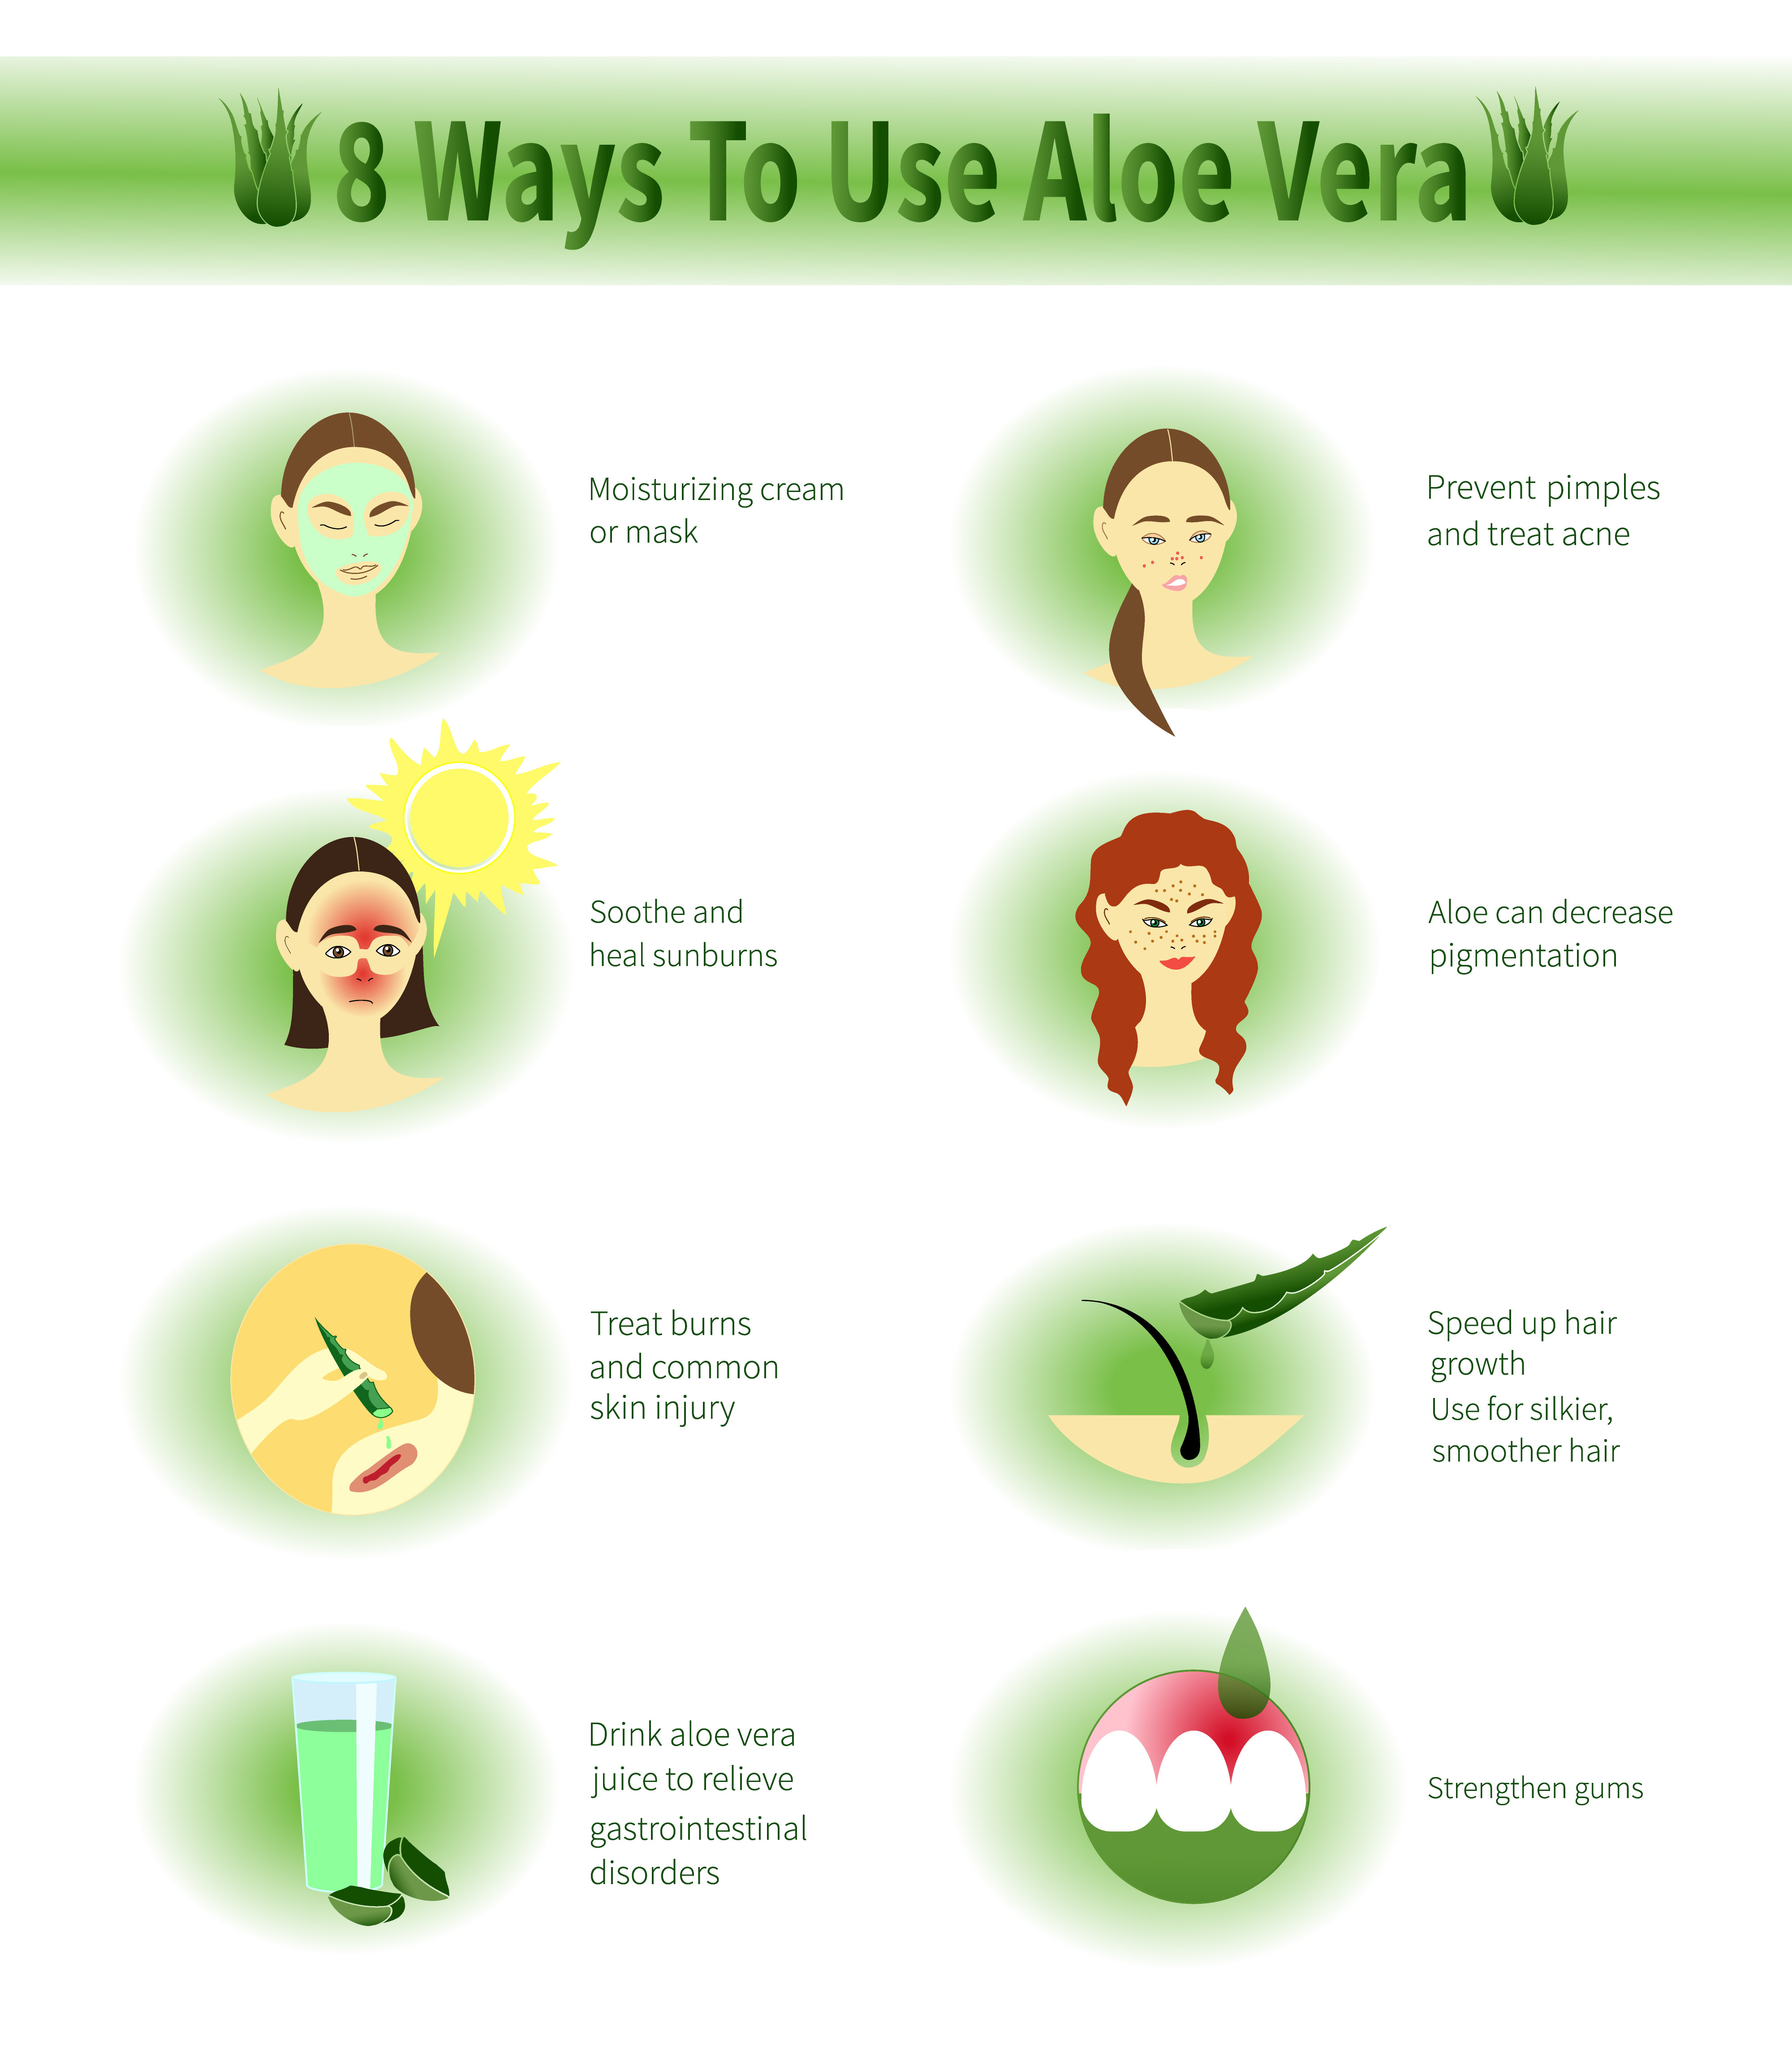 How actually use Aloe Vera?